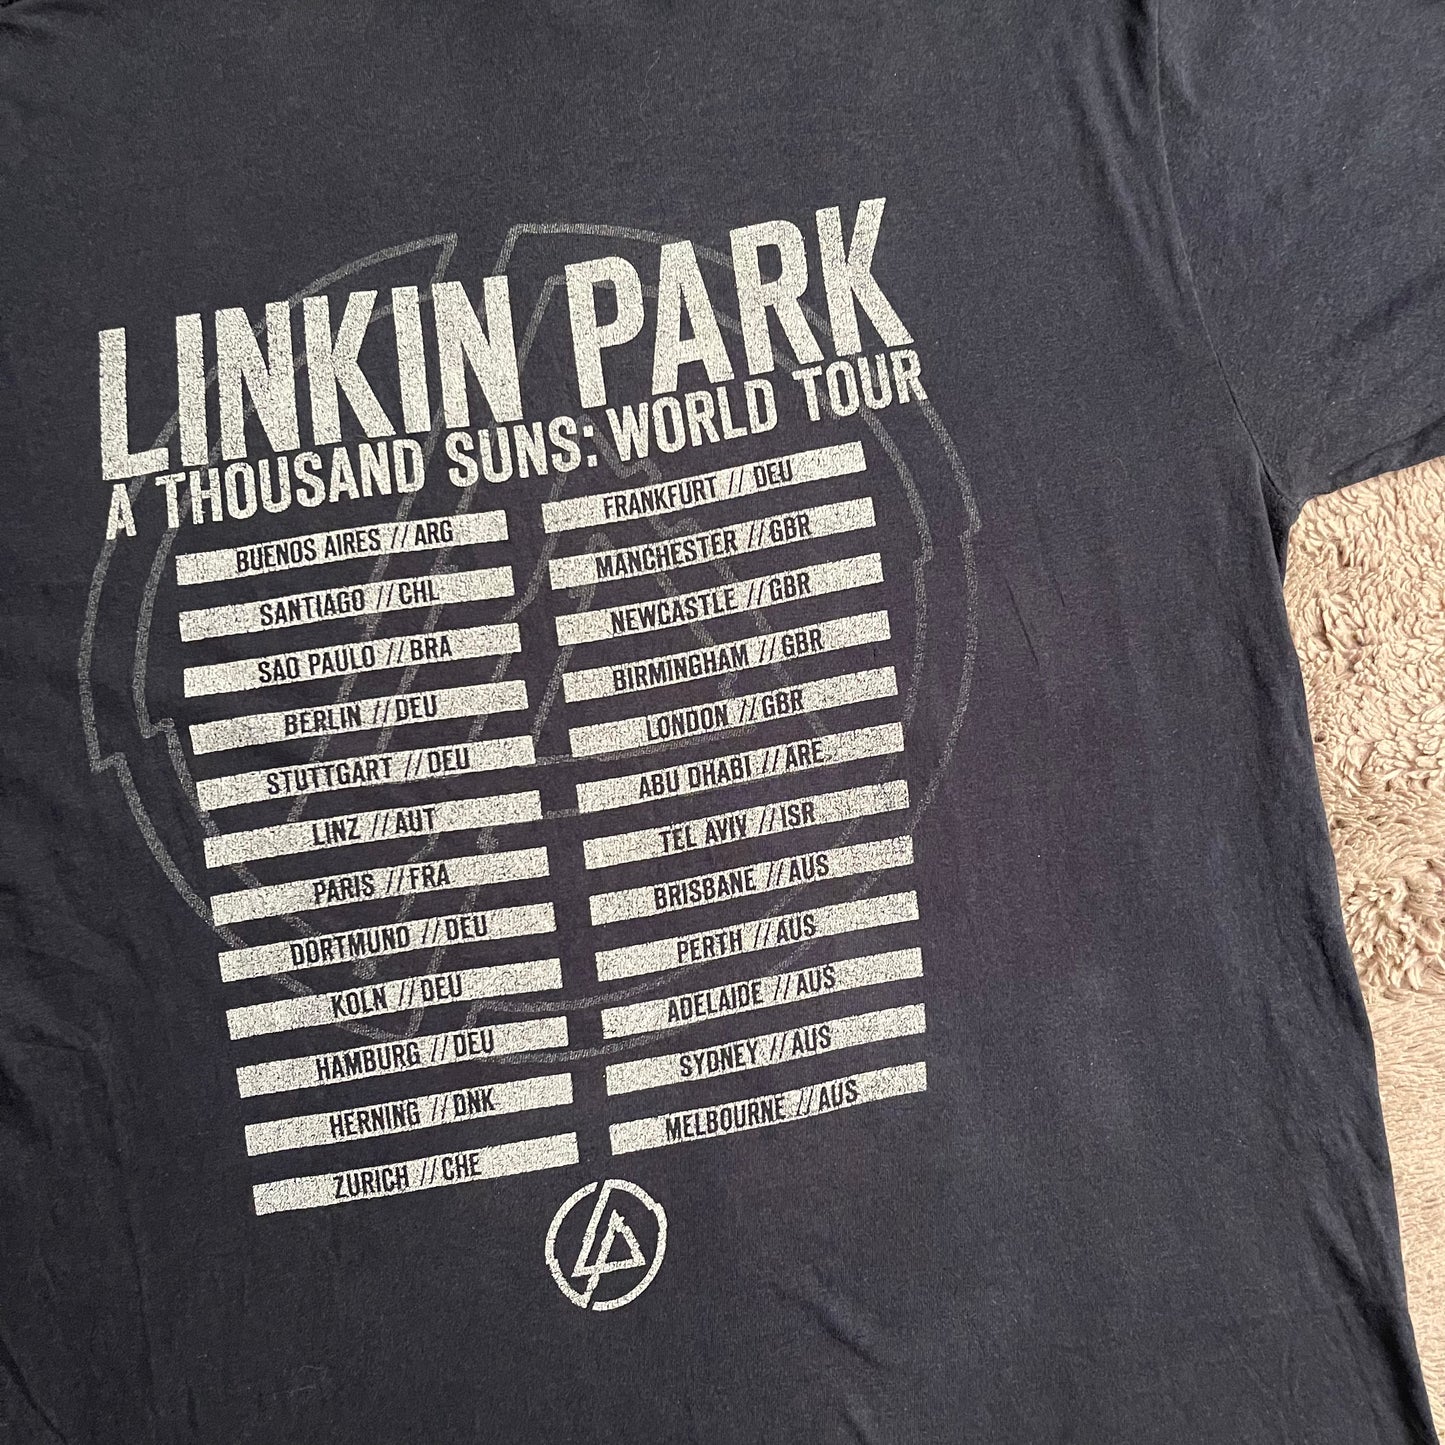 Linkin Park A Thousand Suns World Tour Tee (L)